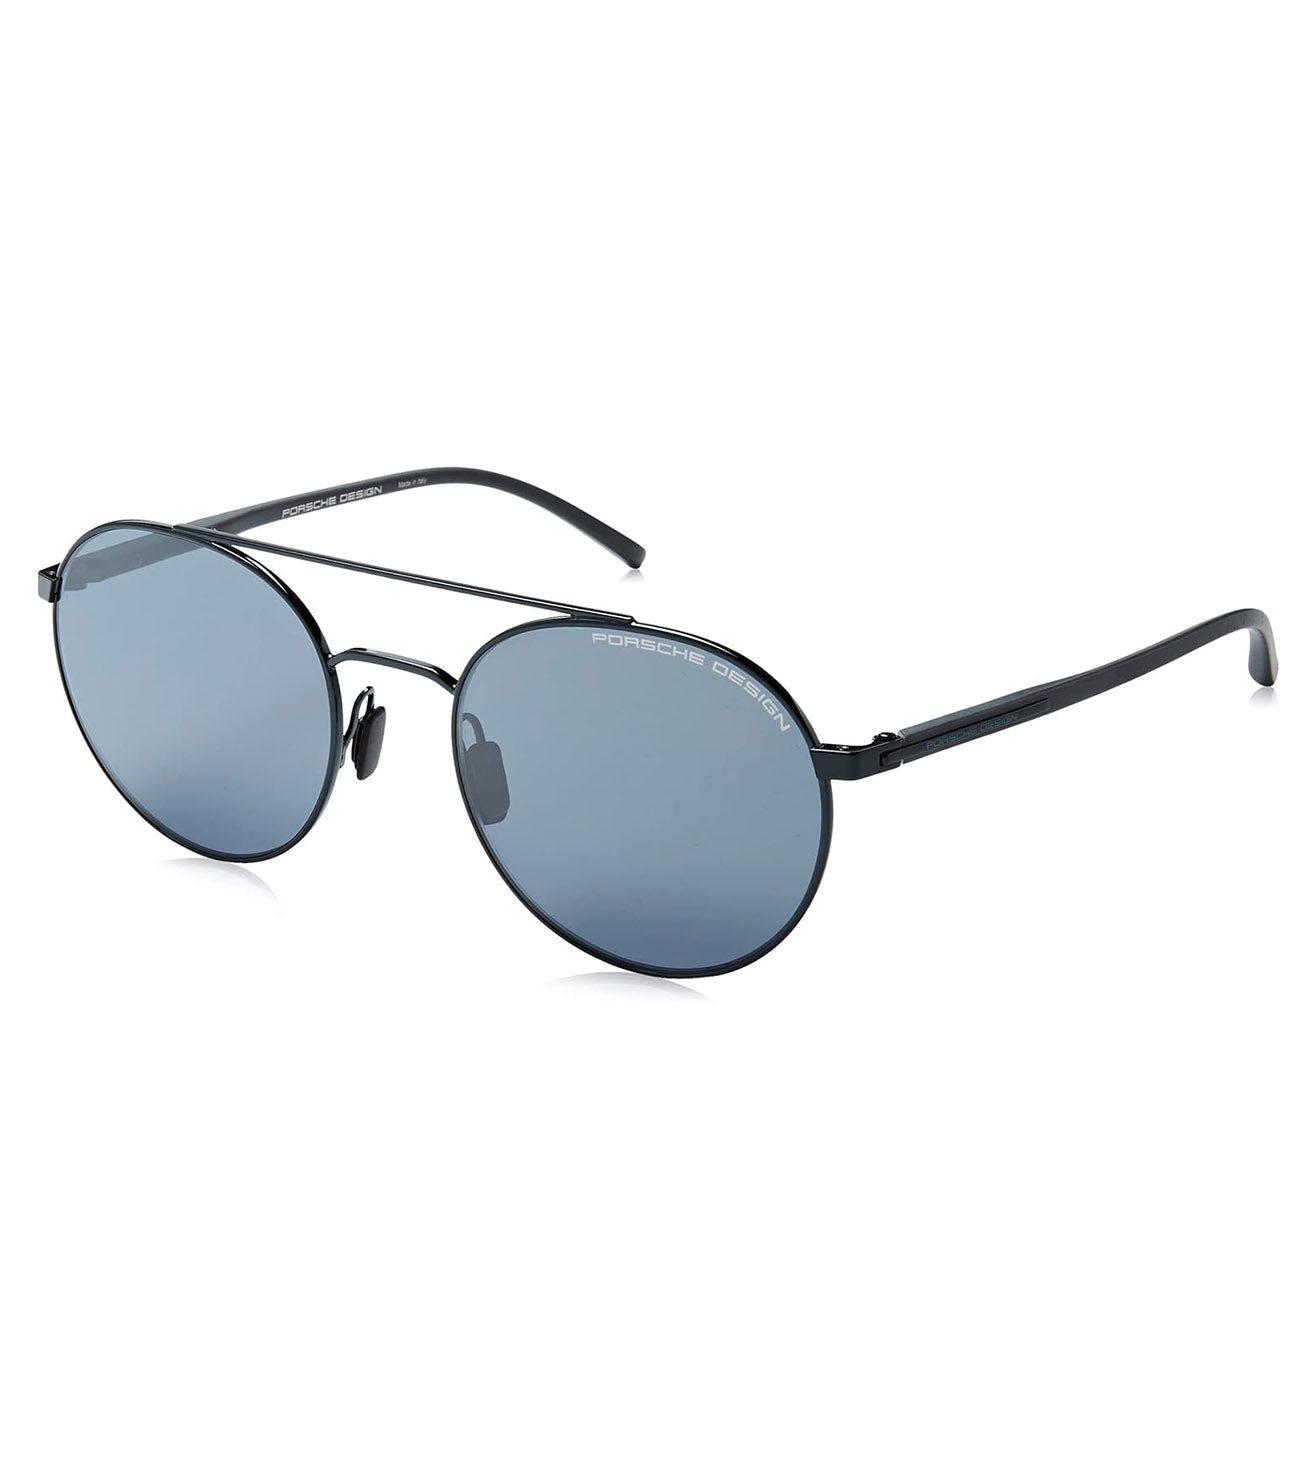 Porsche Design Unisex Blue-Mirrored Round Sunglasses